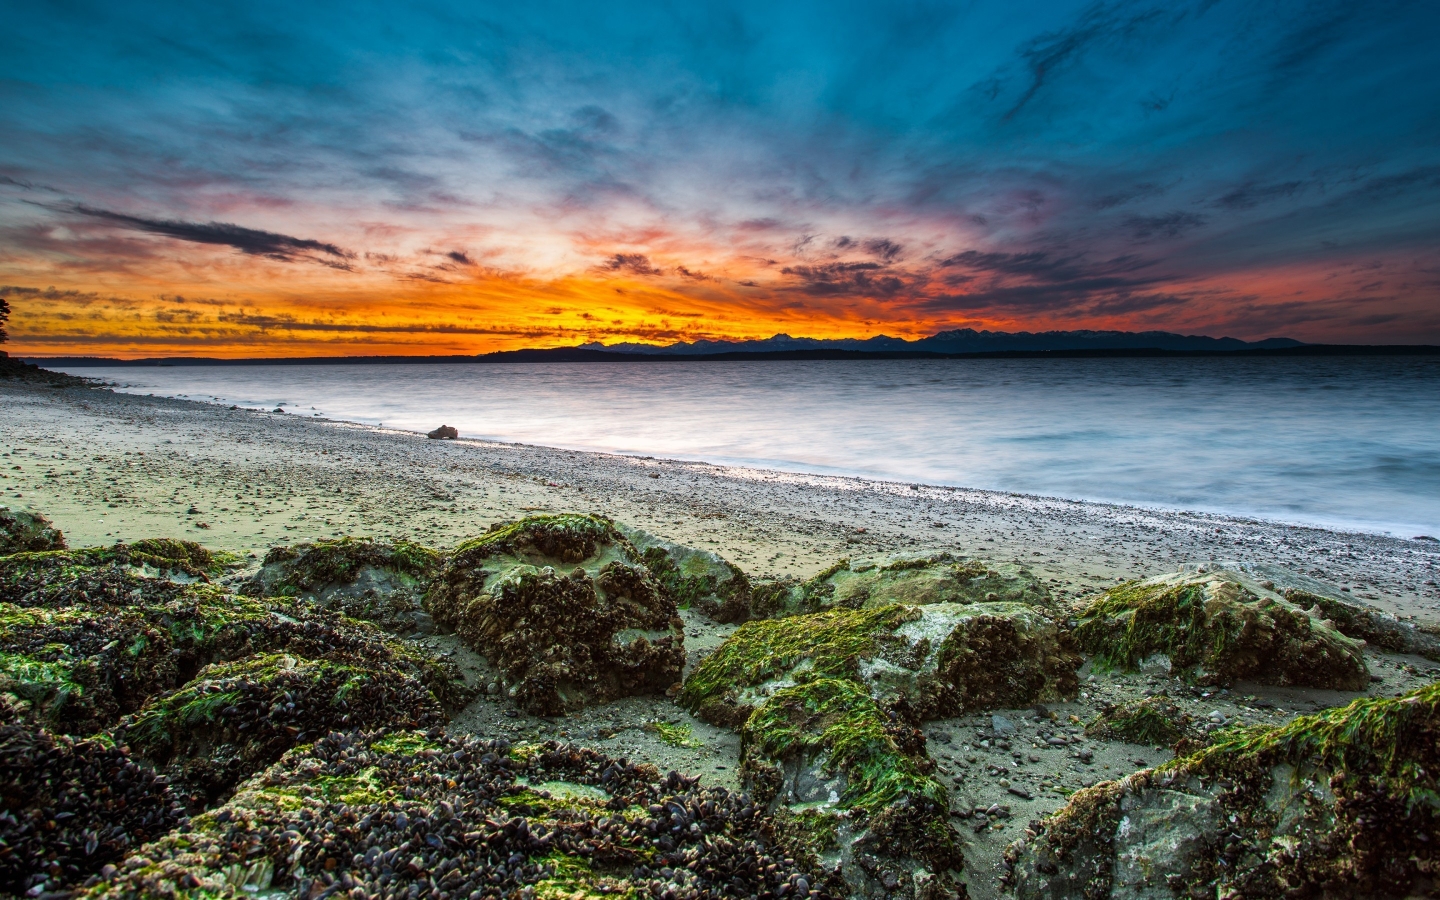 Virgin Beach Sunset for 1440 x 900 widescreen resolution